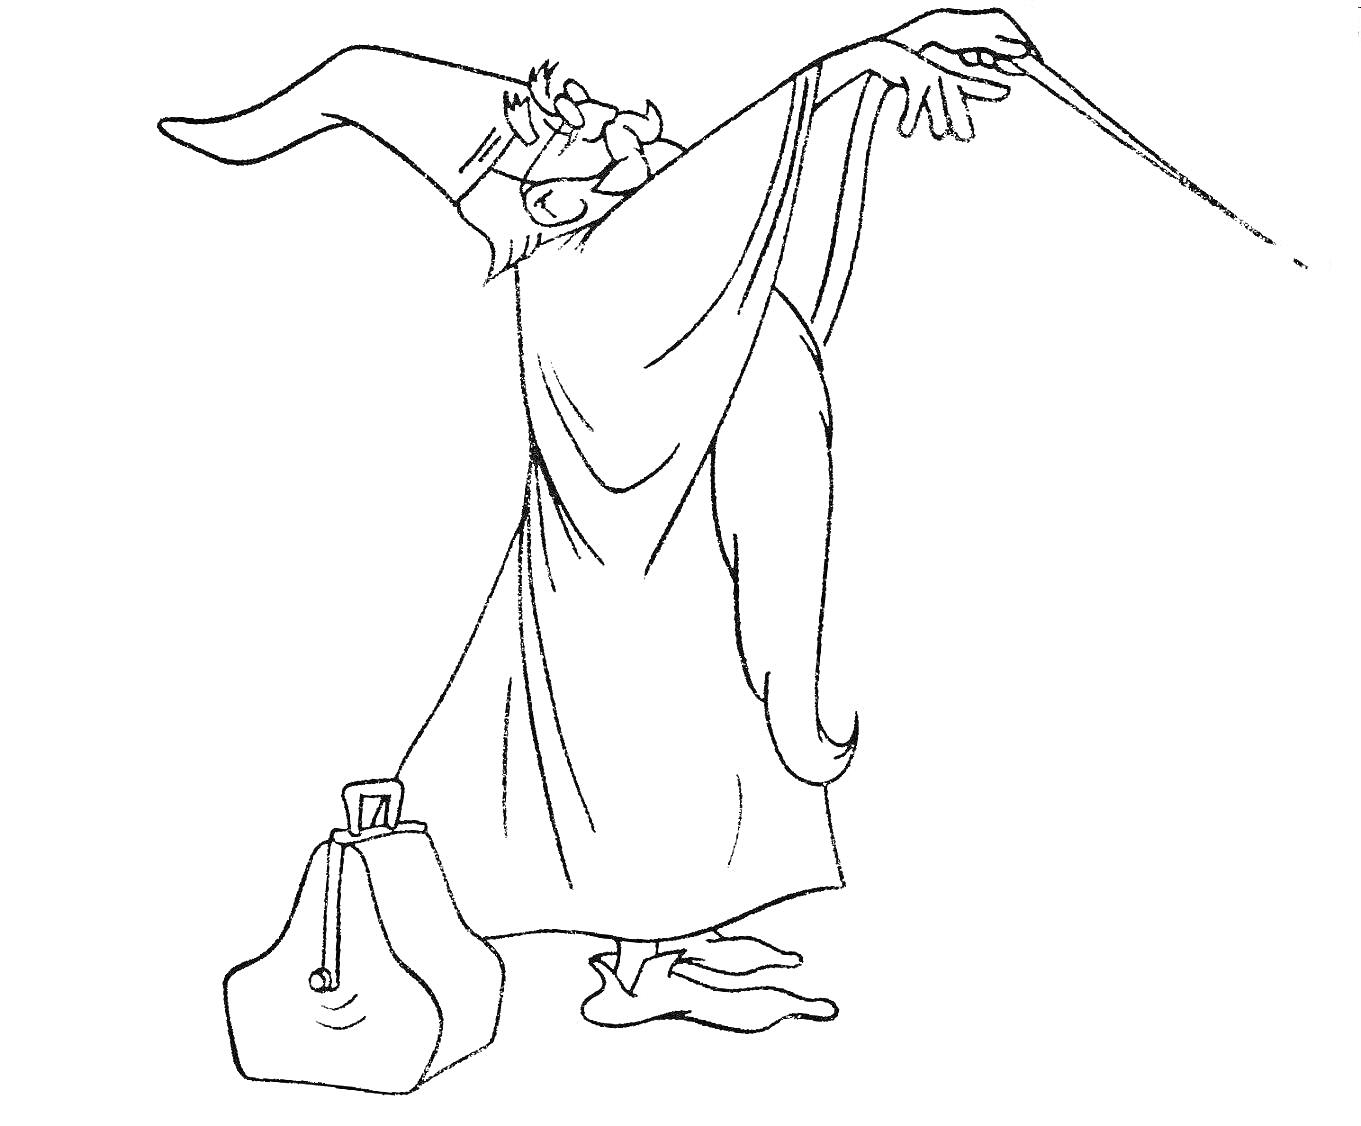 Волшебник с длинной бородой в плаще, размахивающий волшебной палочкой и стоящий рядом с сумкой